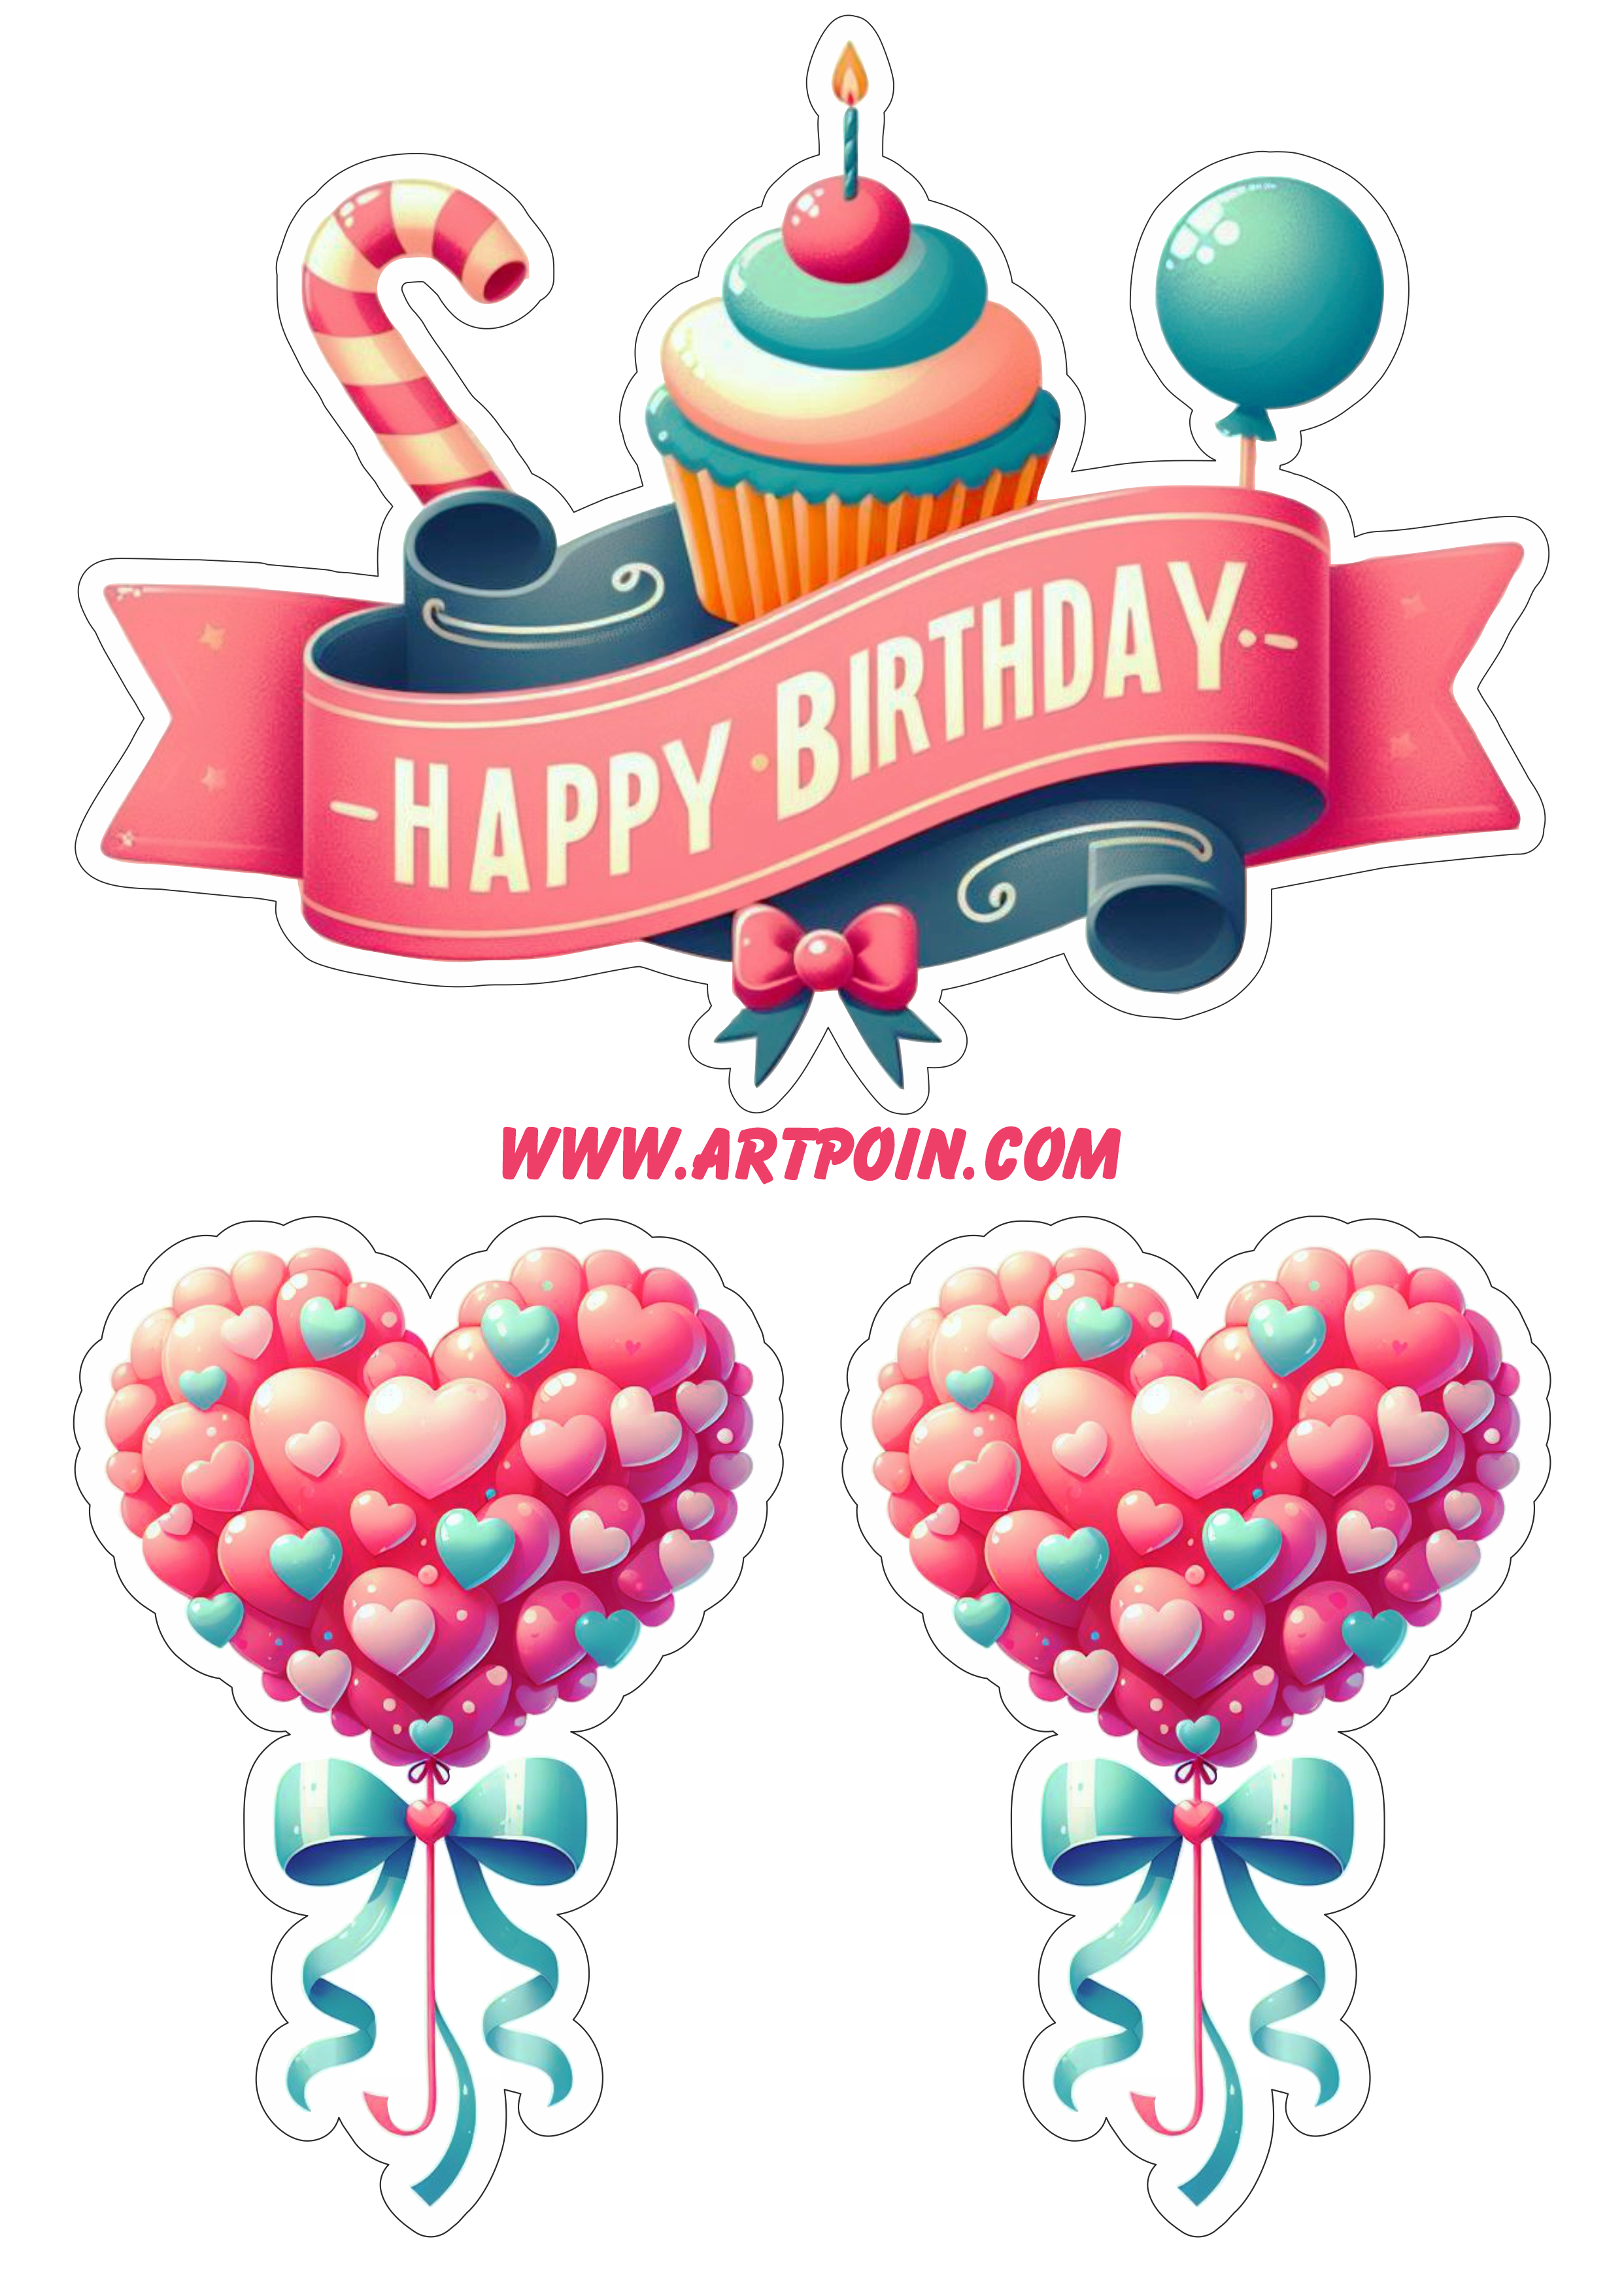 Happy birthday topo de bolo para festa de aniversário corações png